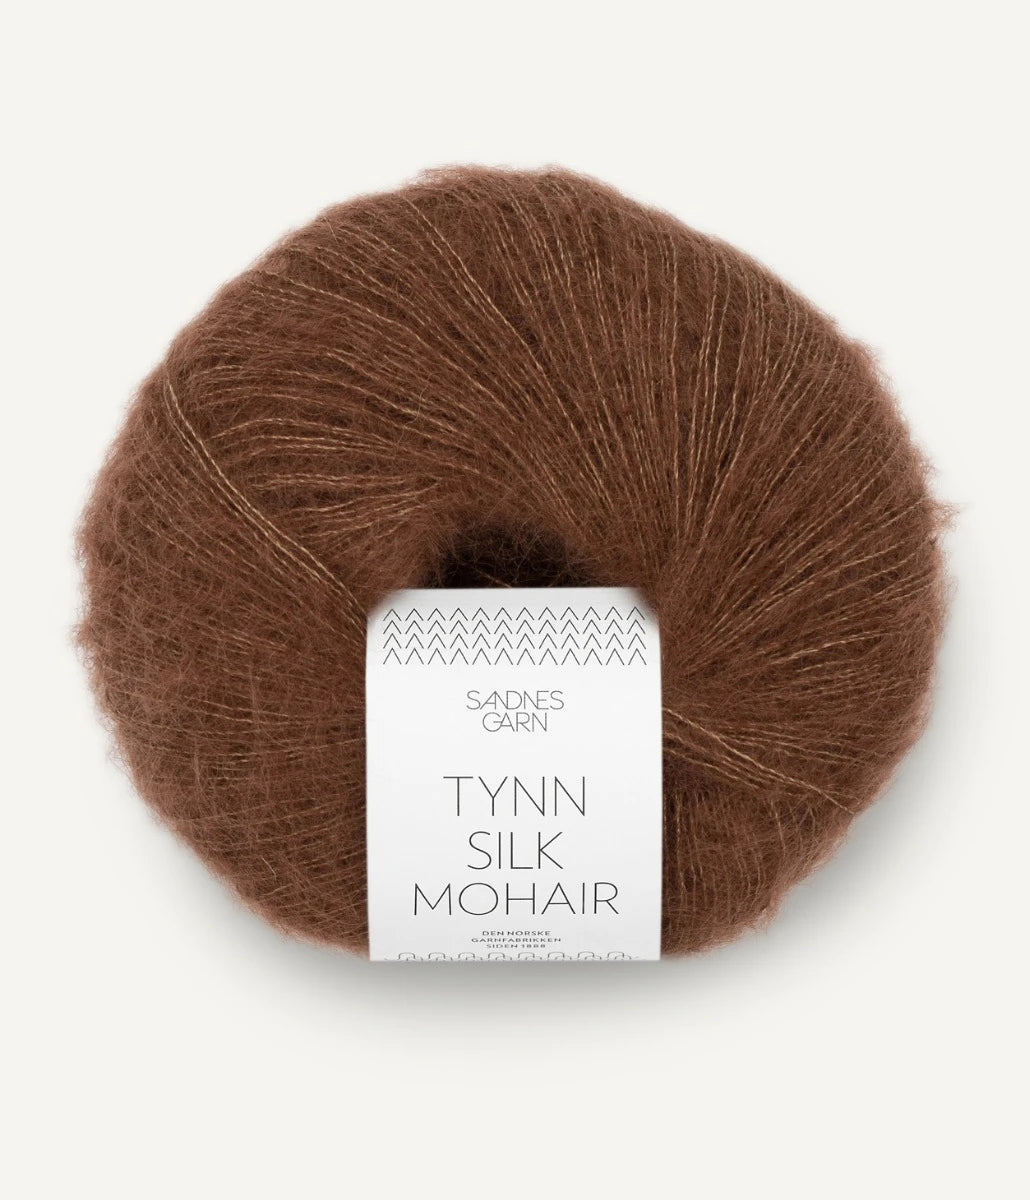 Kuvassa on Sandnes Garn Tynn Silk Mohair -lanka (yarn) värissä Sjokolade.